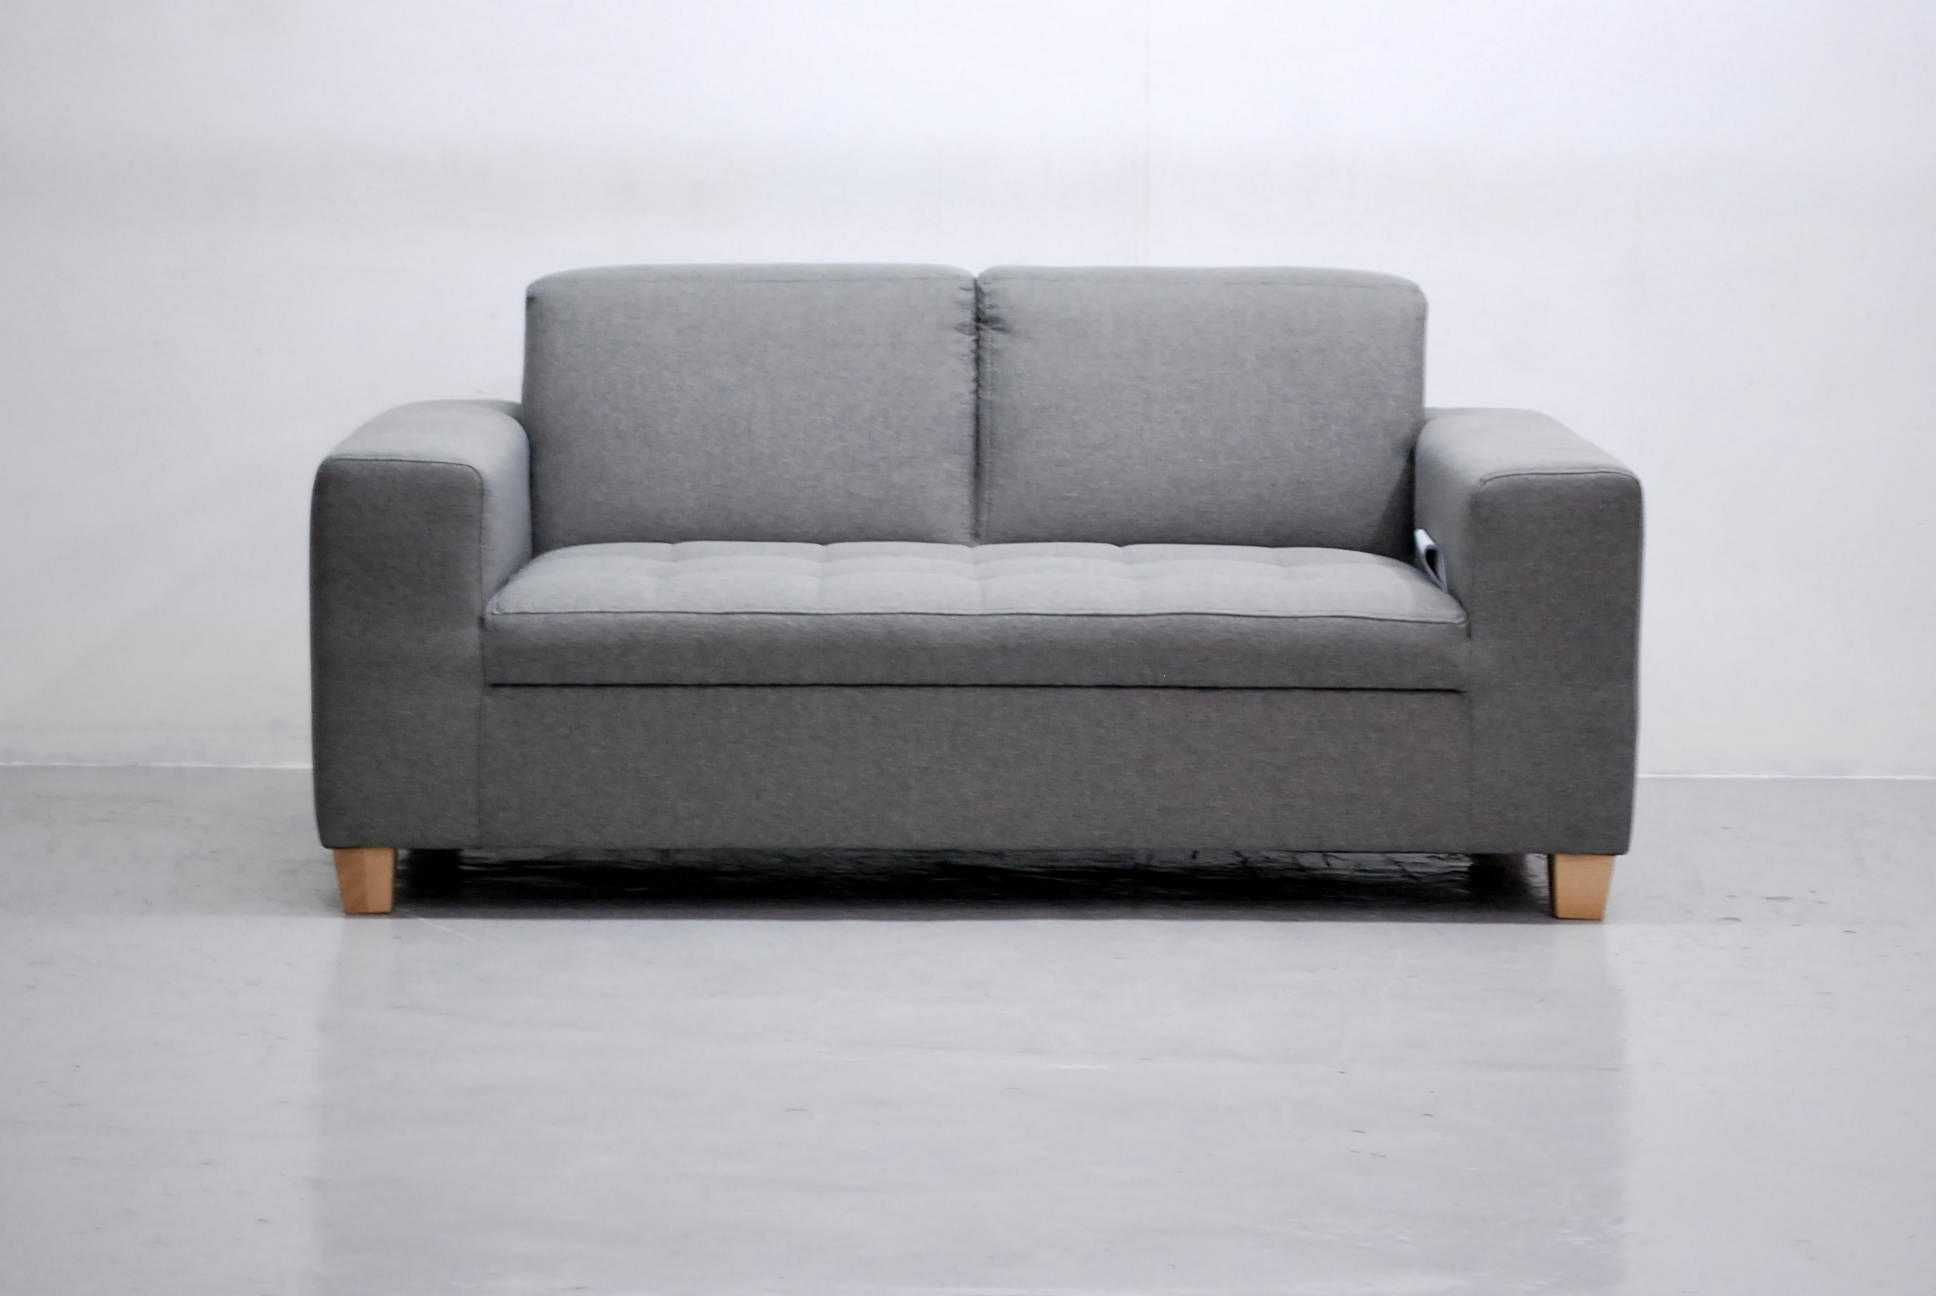 RYL nowa sofa 2- osobowa, kanapa, SIEDZISKO  okazja, salon poczekalnia